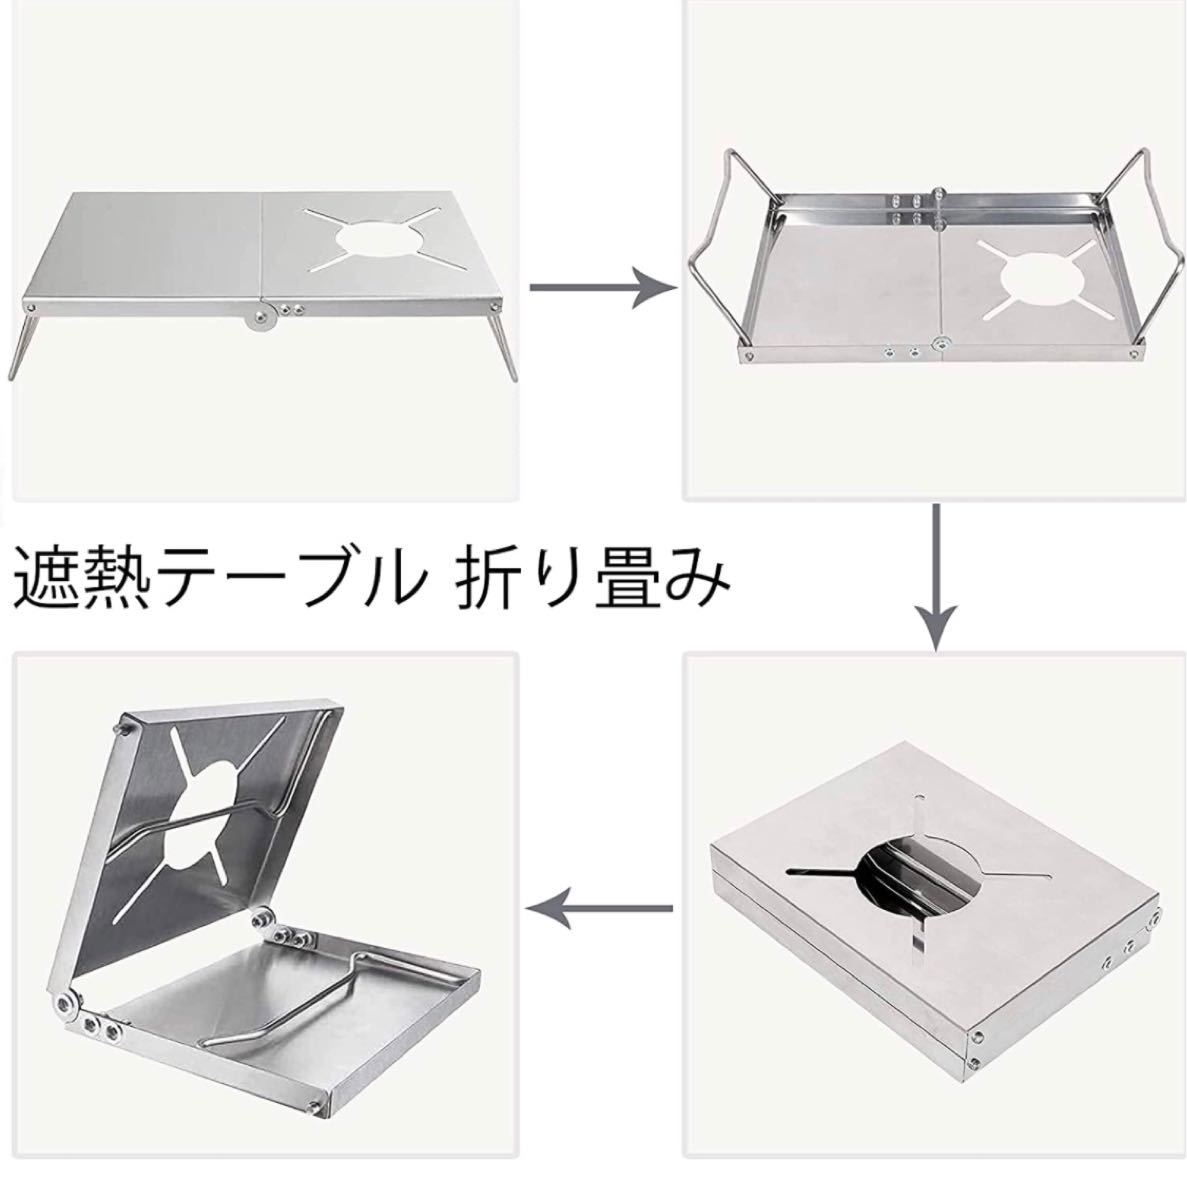 遮熱テーブル アウトドア テーブル ソト シングルバーナー st310 折り畳み アルミ合金 軽量 コンパクト 遮熱板 